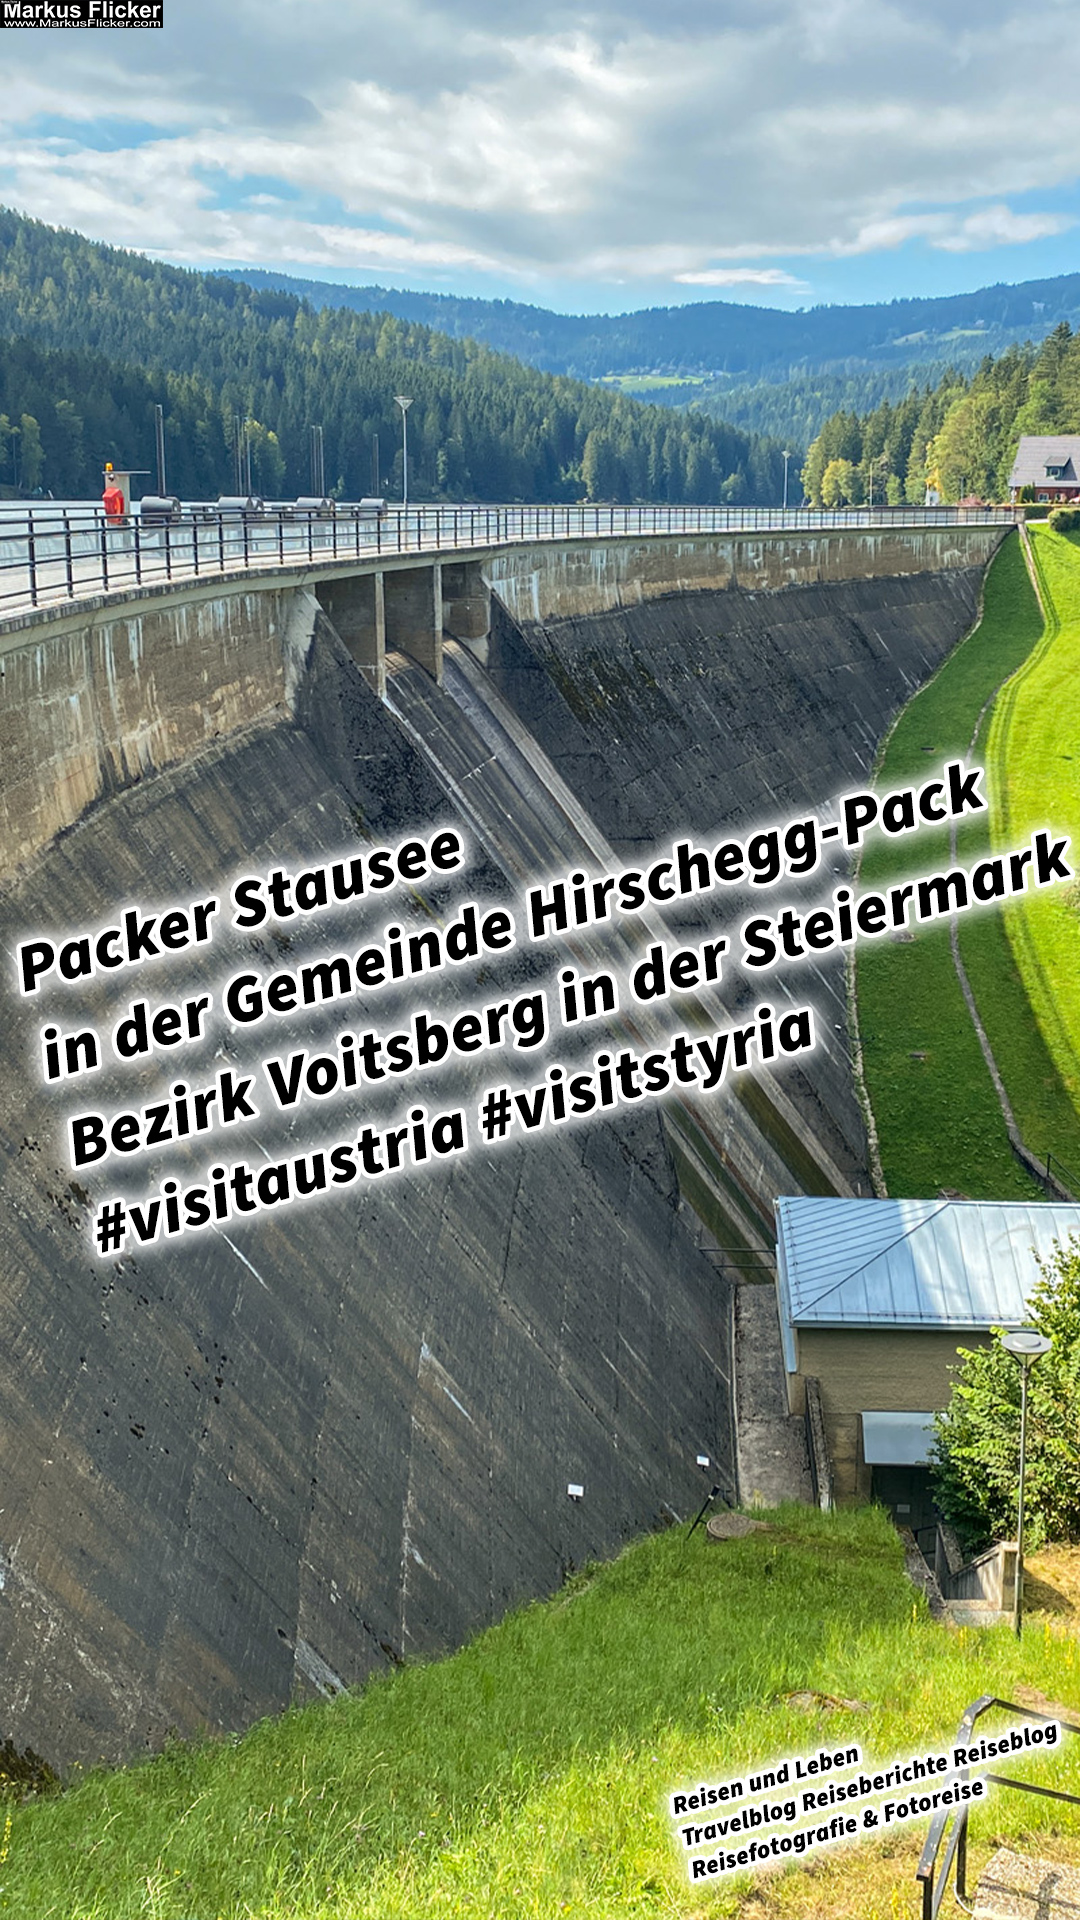 Packer Stausee in der Gemeinde Hirschegg-Pack Bezirk Voitsberg in der Steiermark #visitaustria #visitstyria